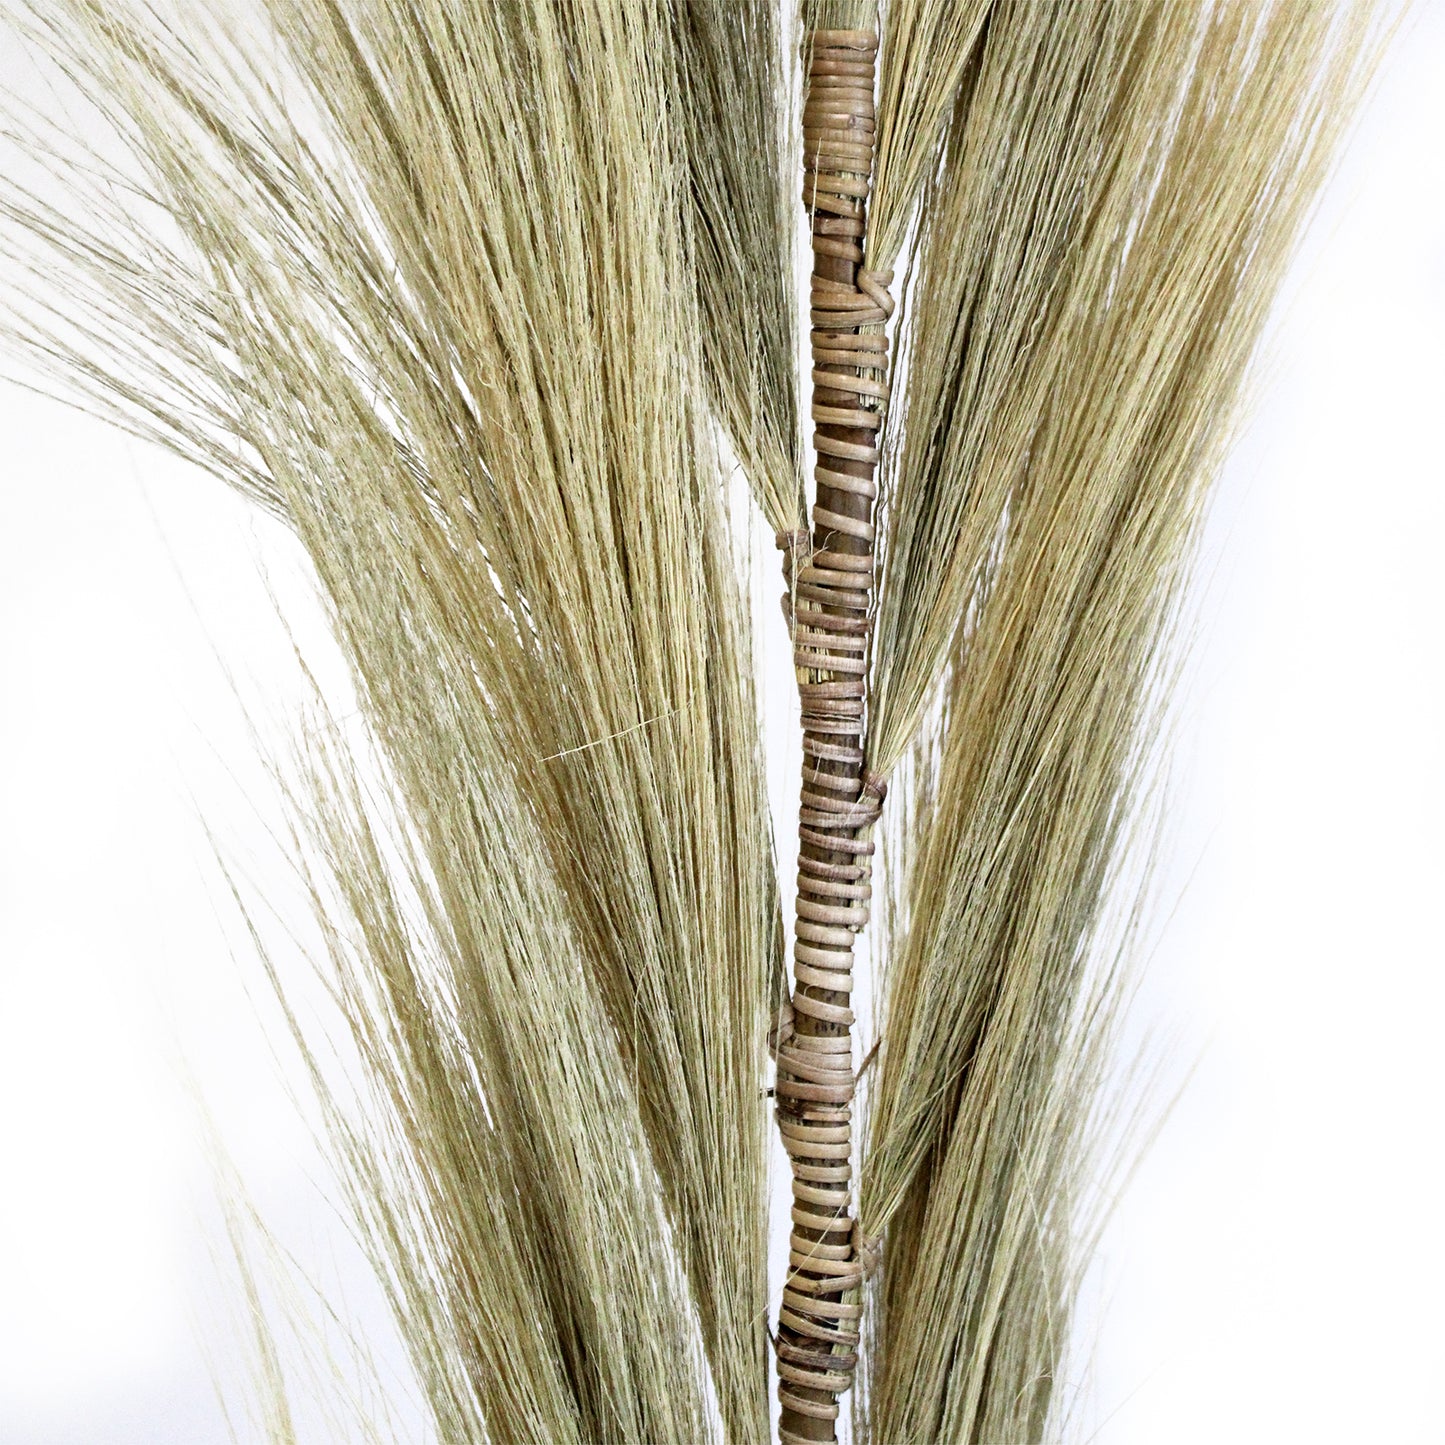 3 x Rayung Grass Blond - 1.6m